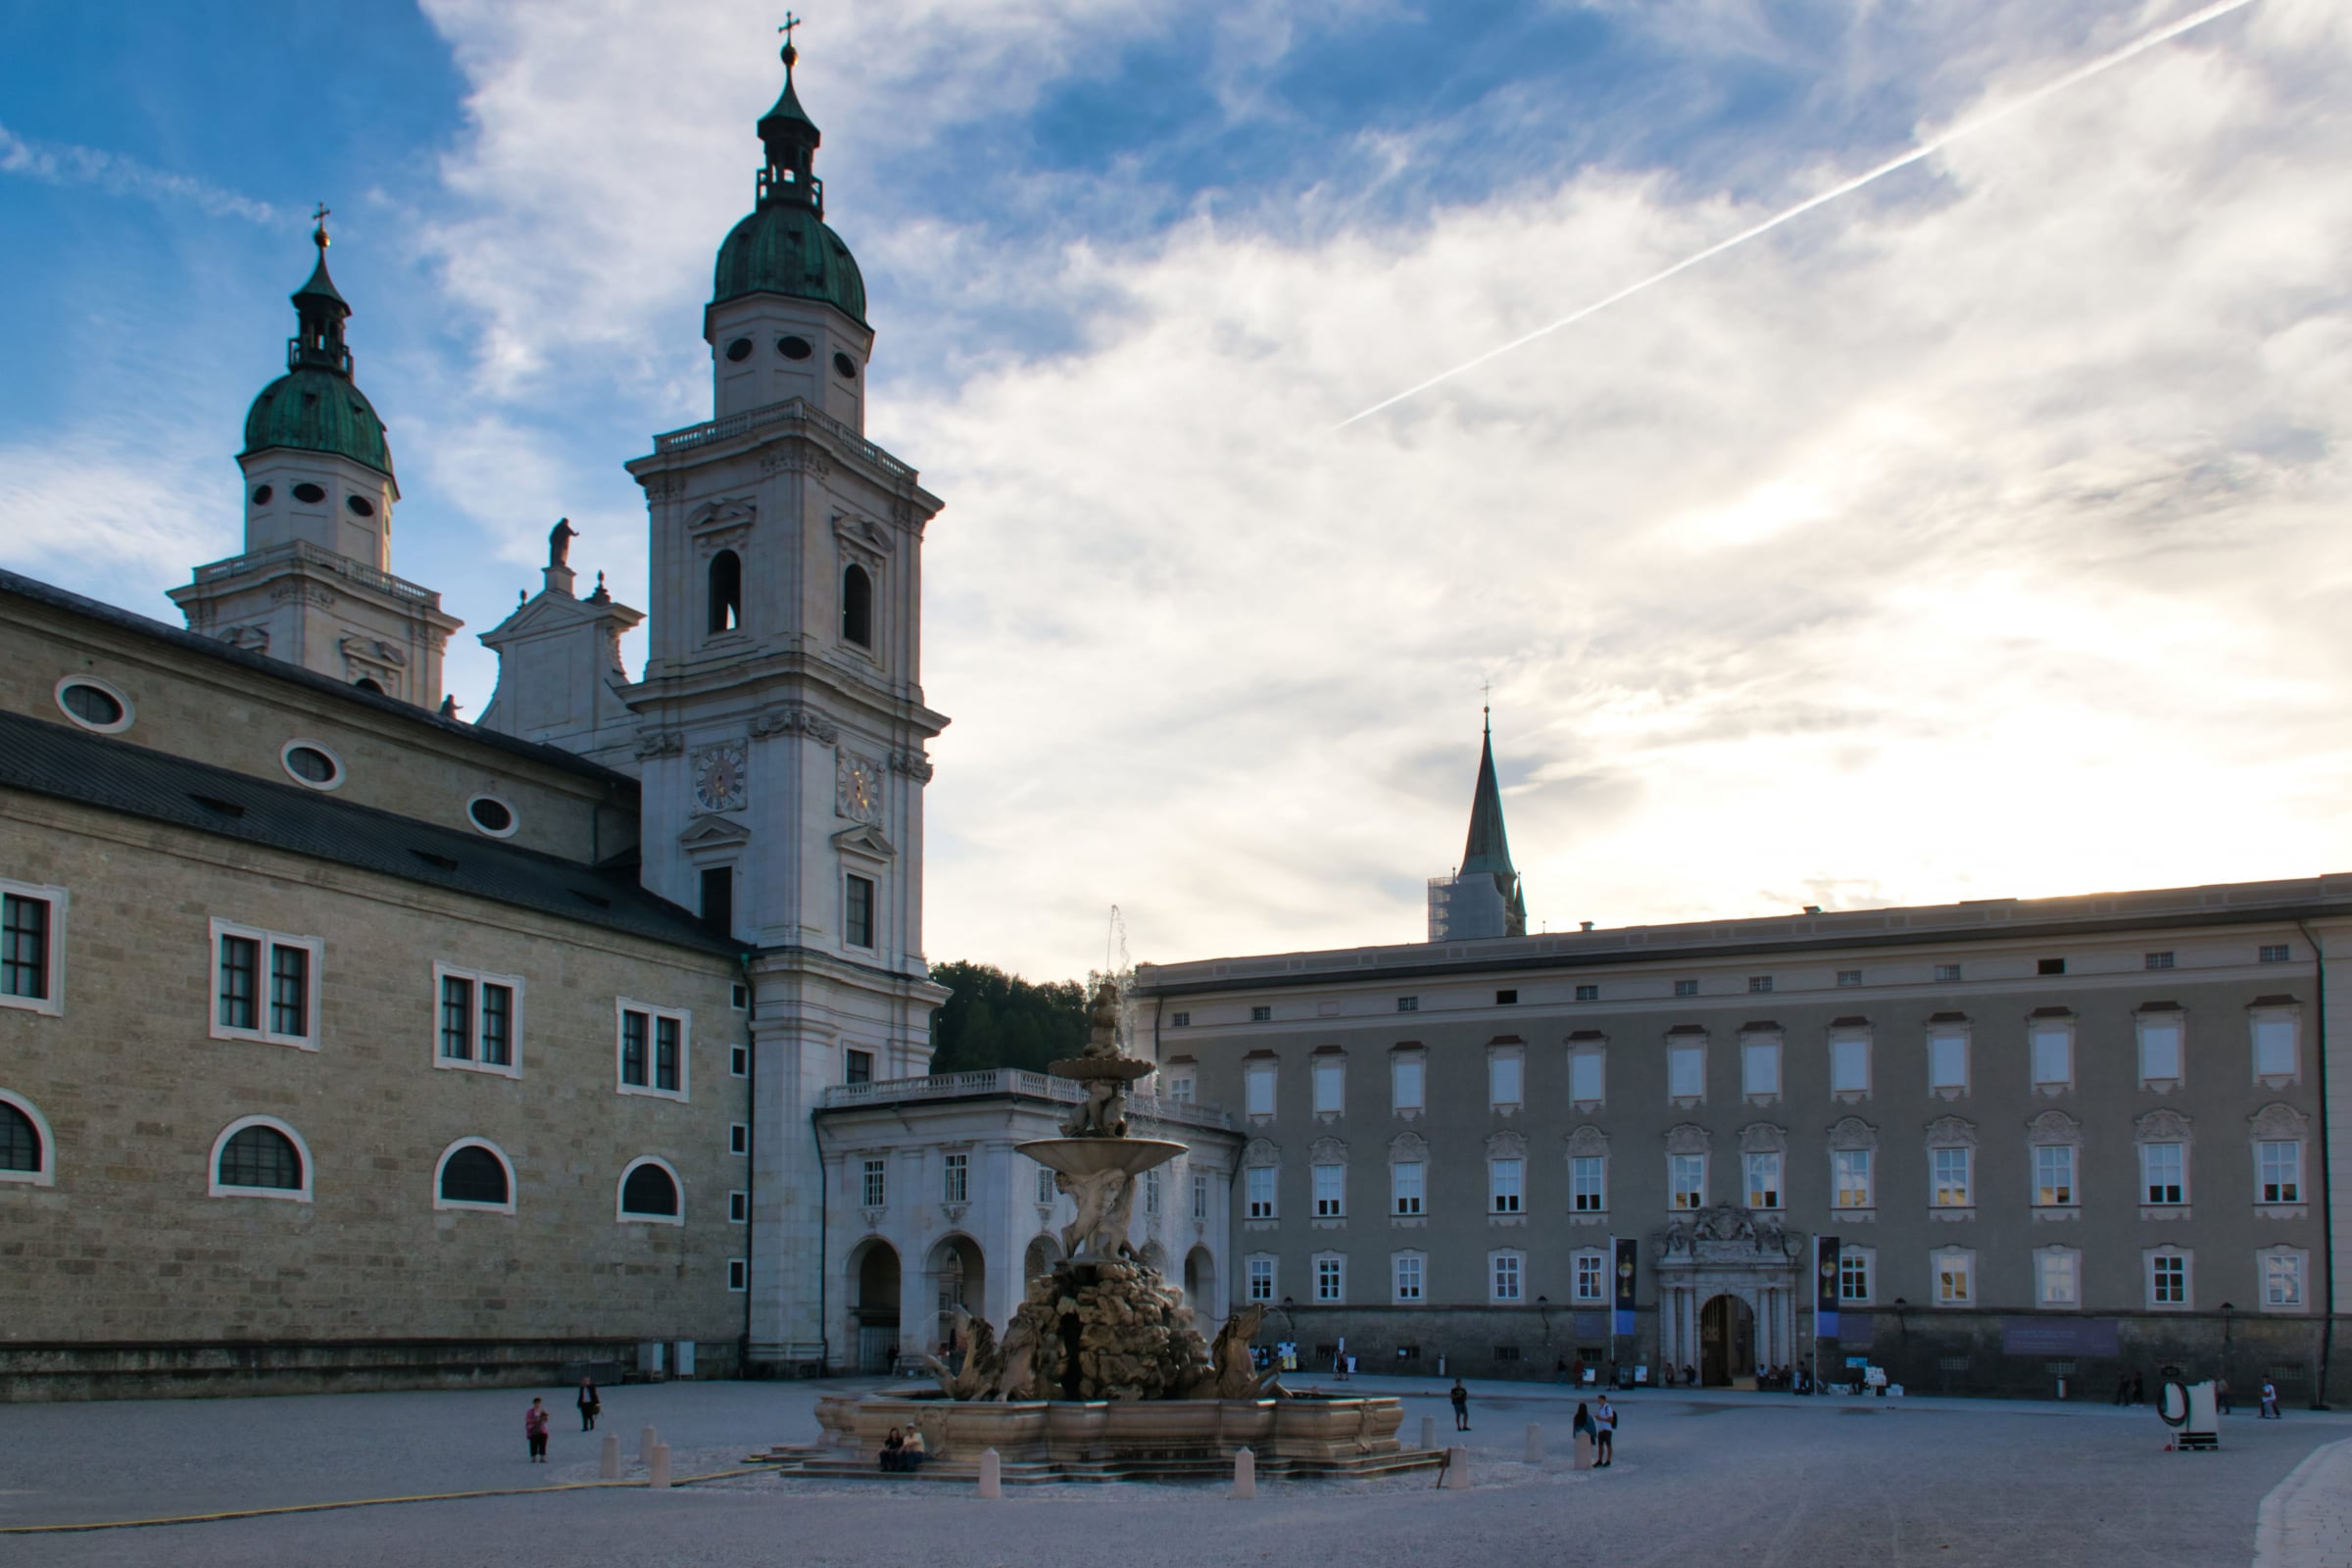 Salzburg - Residenzplatz